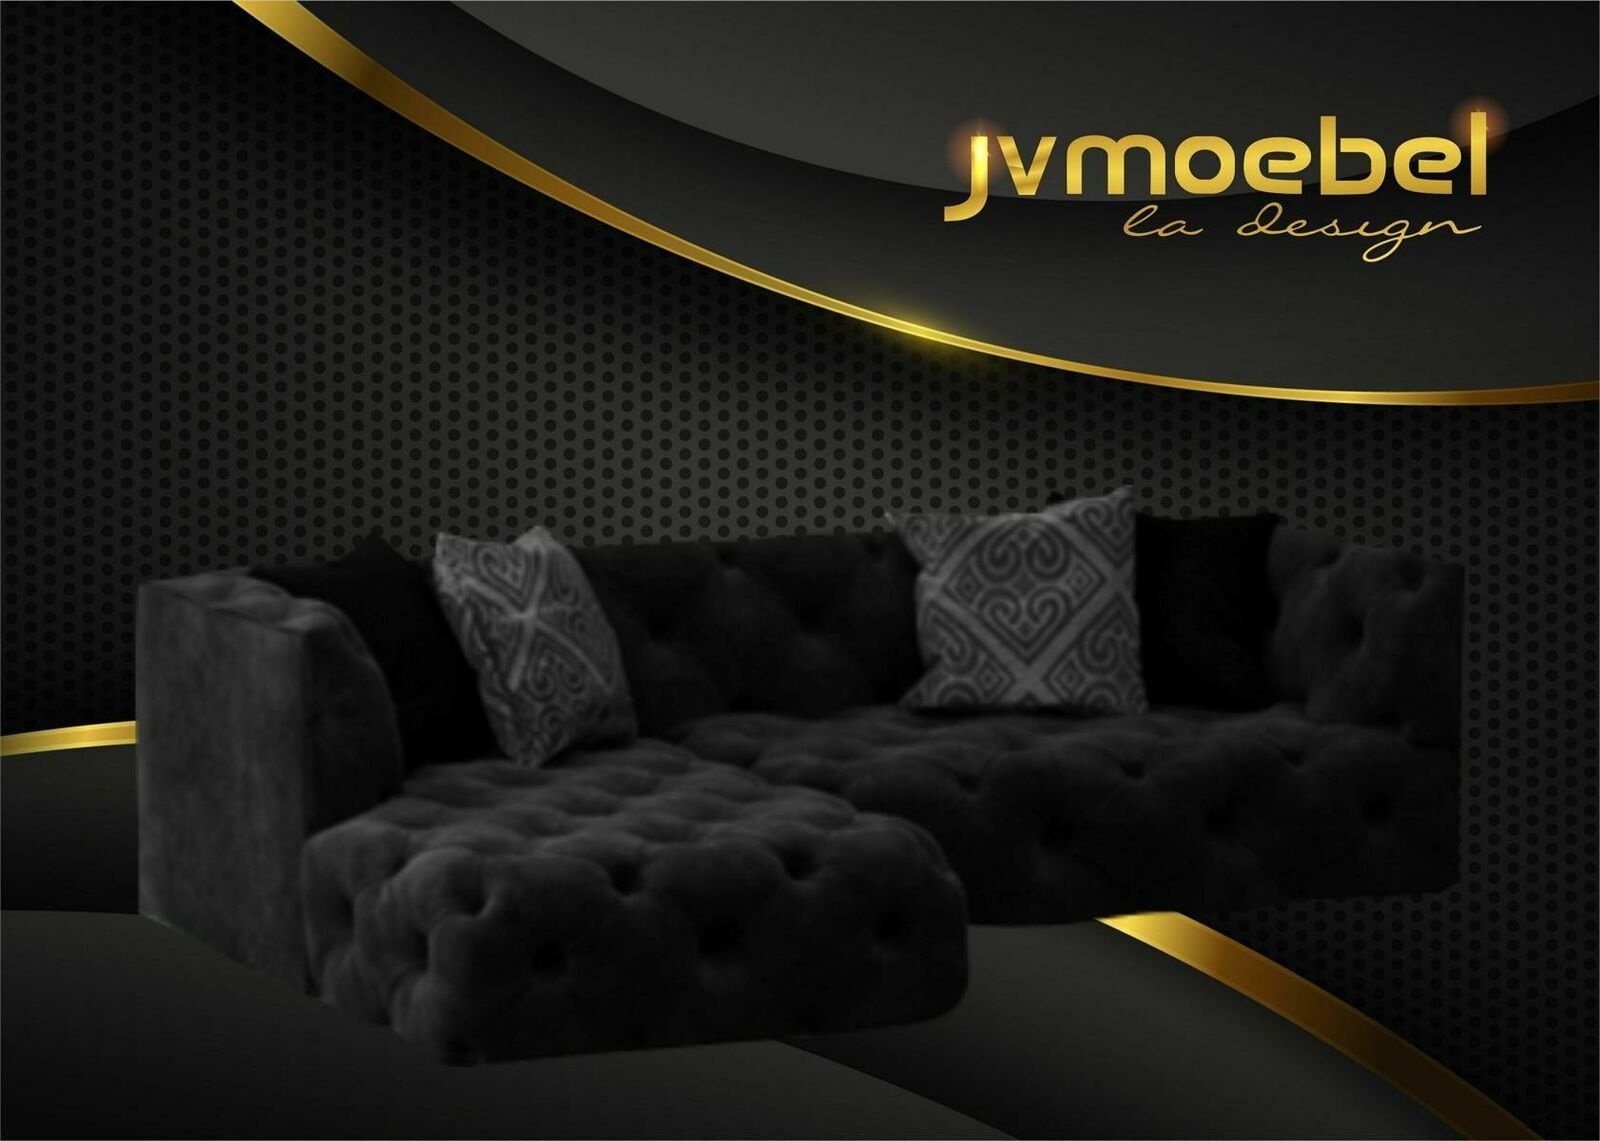 JVmoebel Ecksofa Braunes Chesterfield L-Form Couch Design Polstermöbel Neu, Made in Europe Schwarz